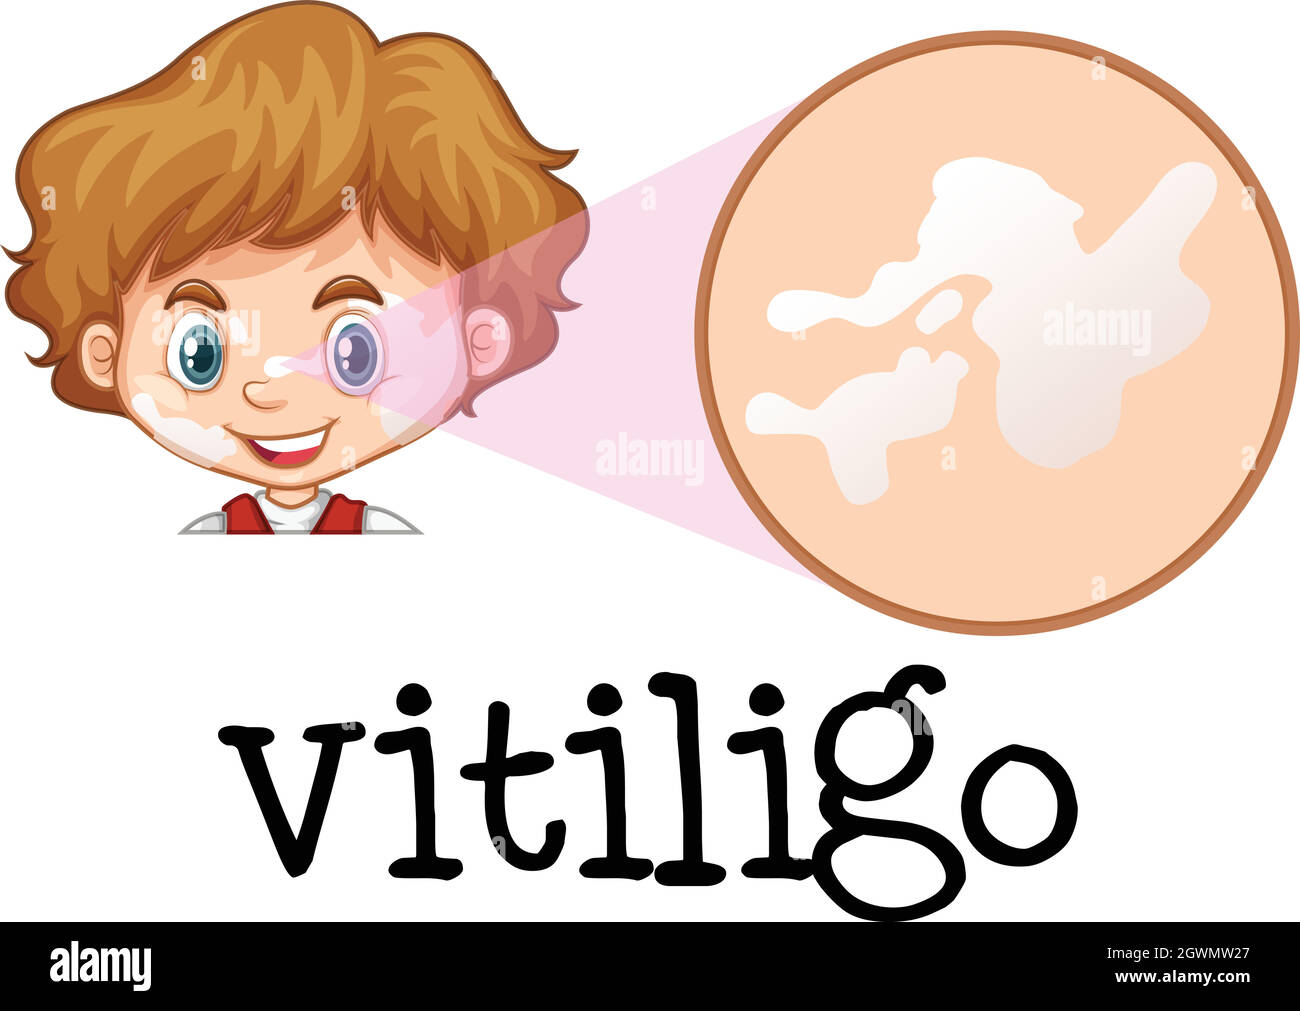 A Boy with Vitiligo on Face Stock Vector